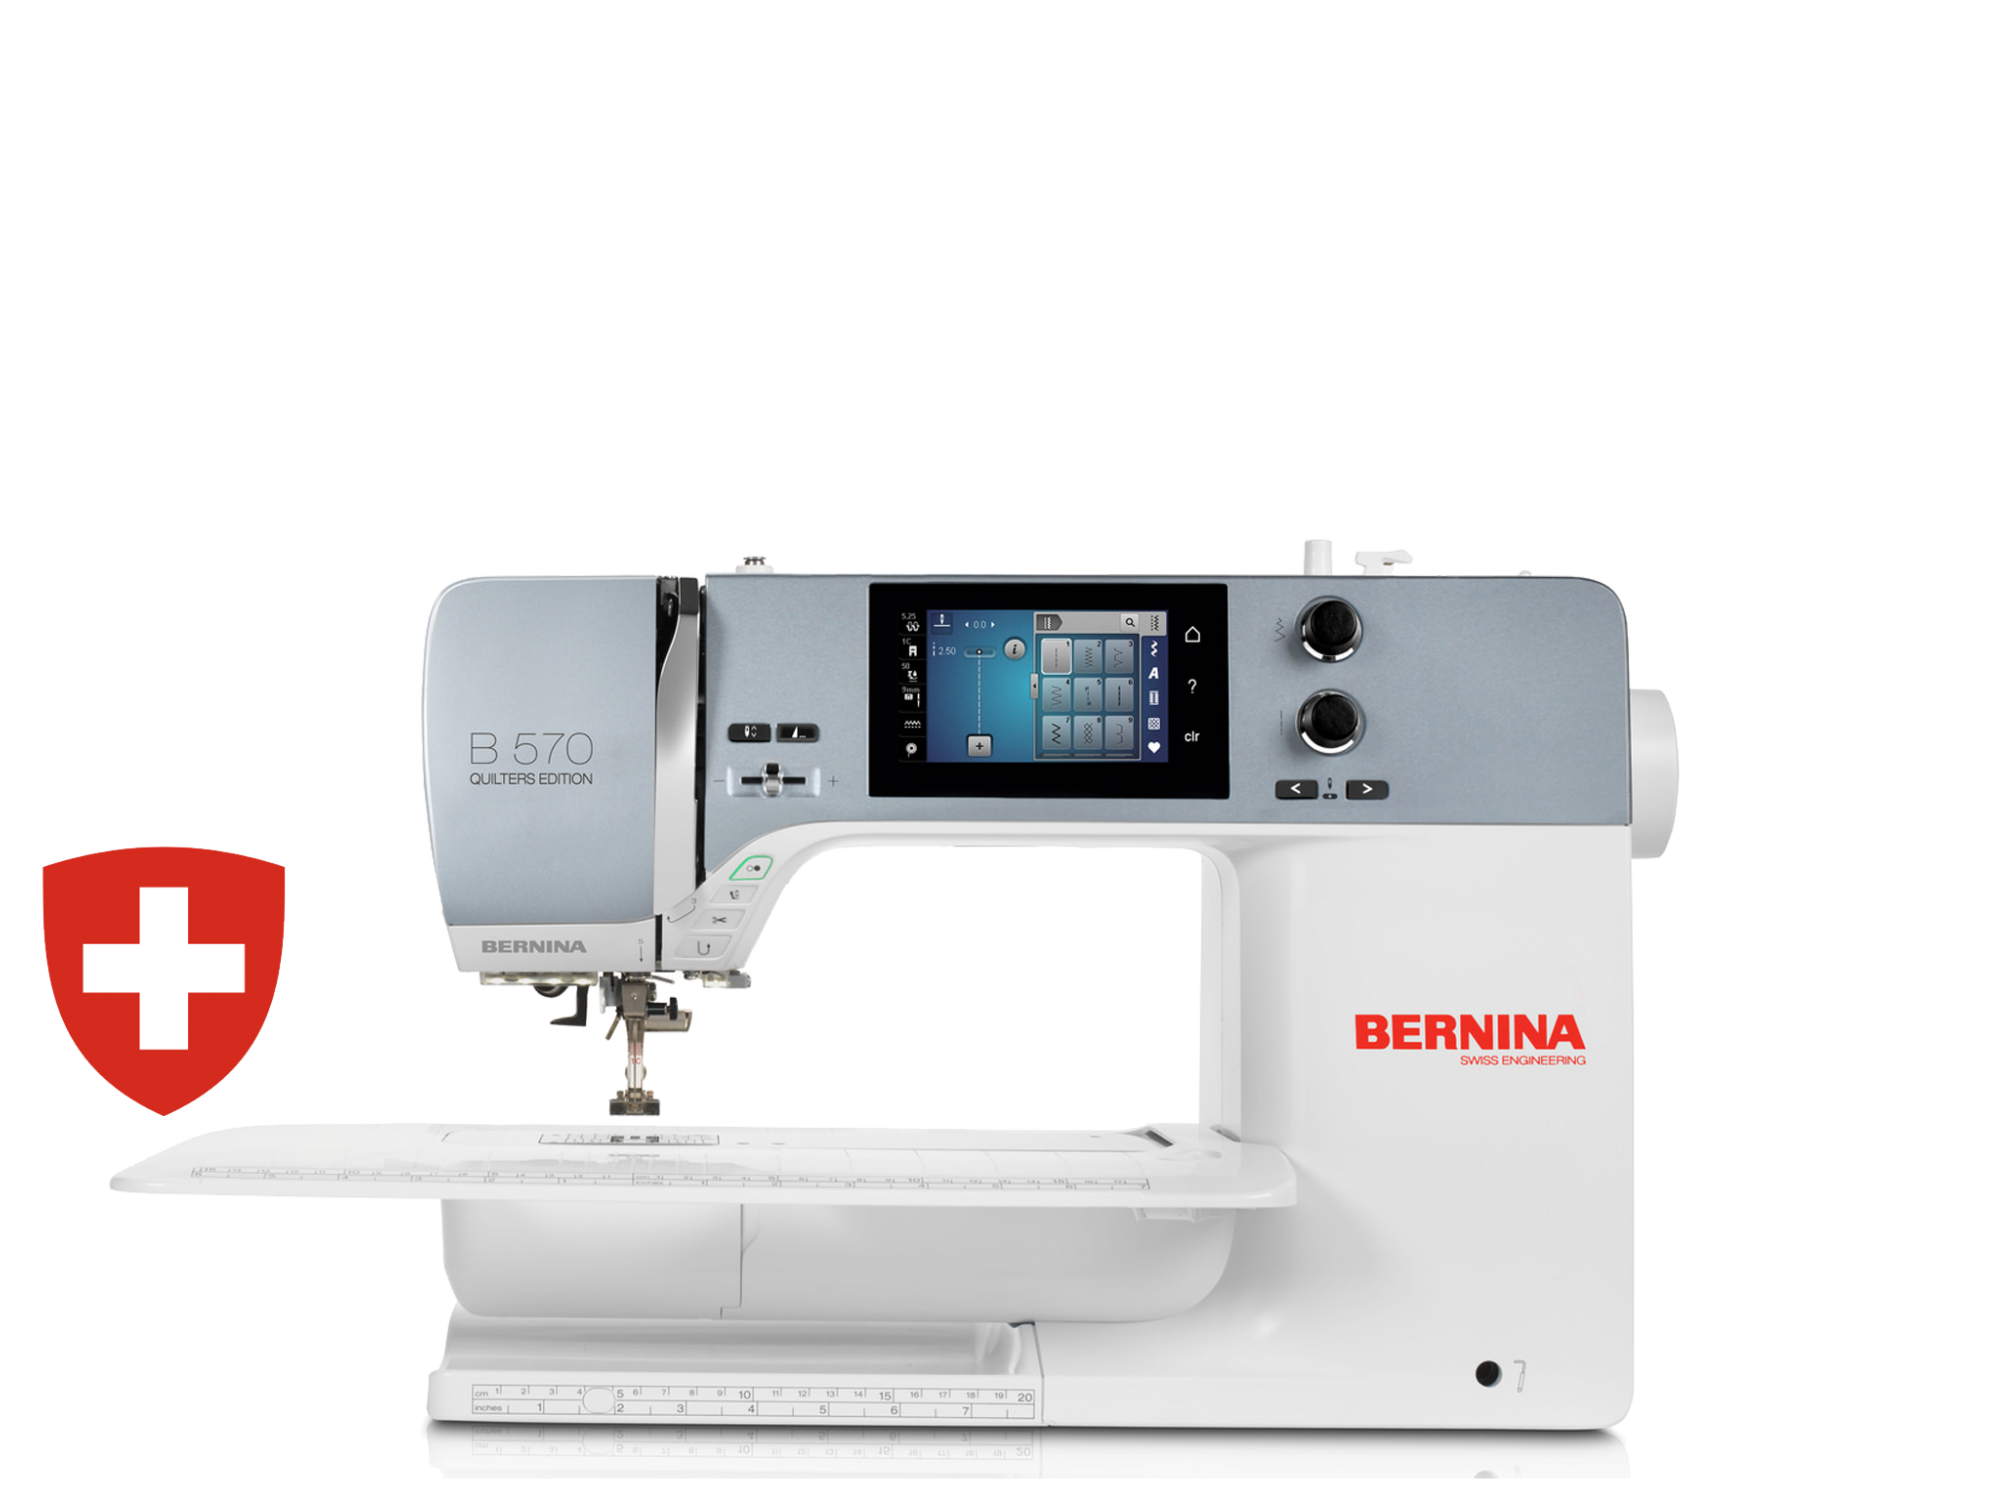 Kompiuterizuota siuvimo-siuvinėjimo mašina BERNINA 570QE